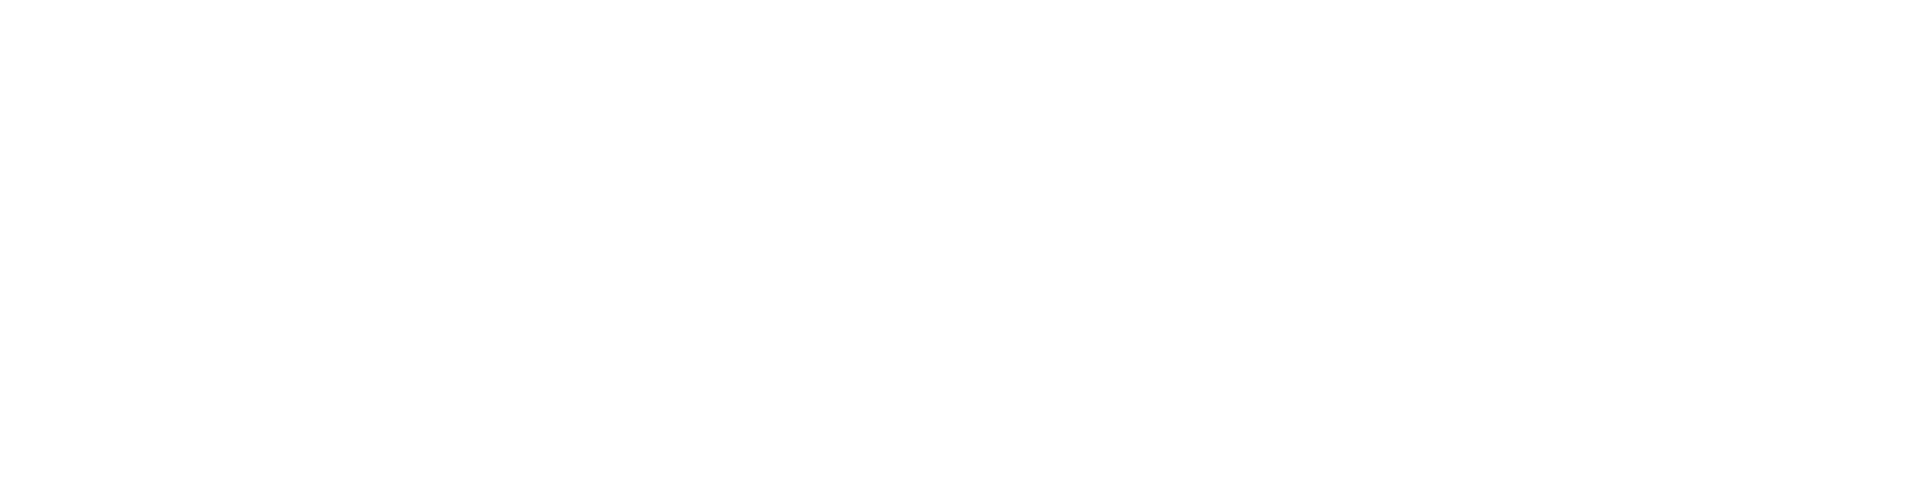 vevo_logo.png